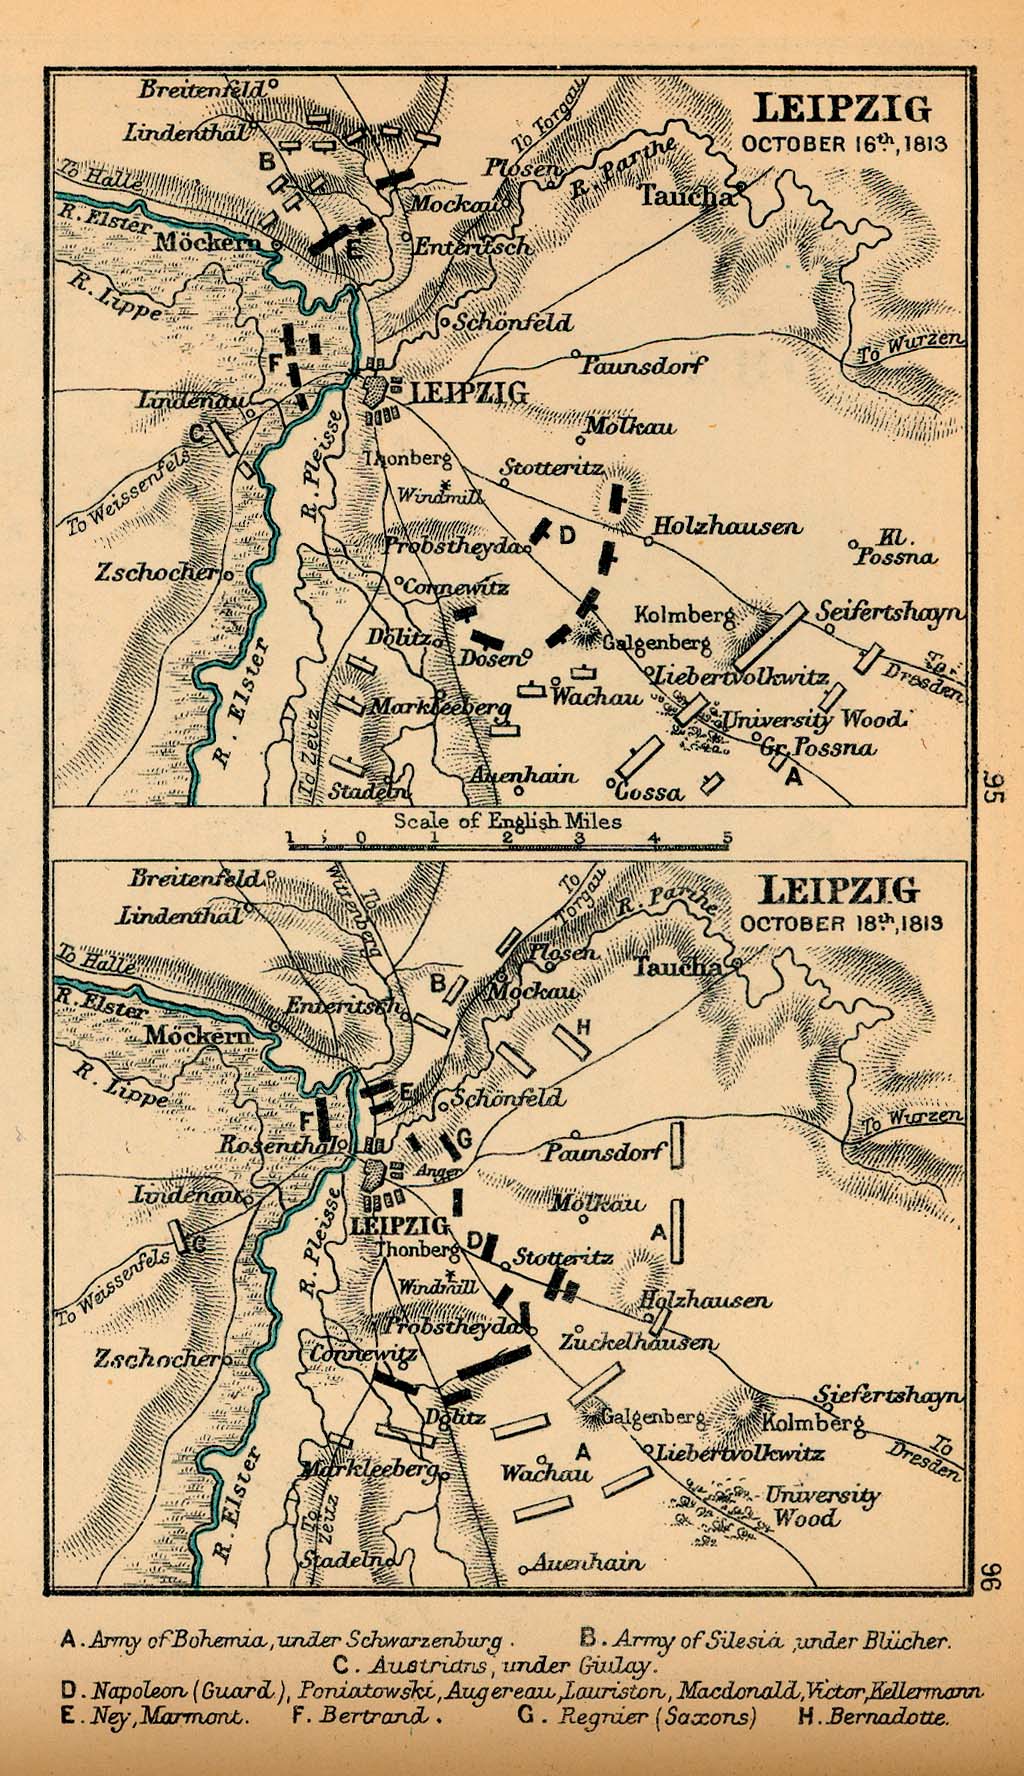 Mapa de la Batalla de Leipzig, Alemania, 16 Octubre y 18 Octubre, 1813